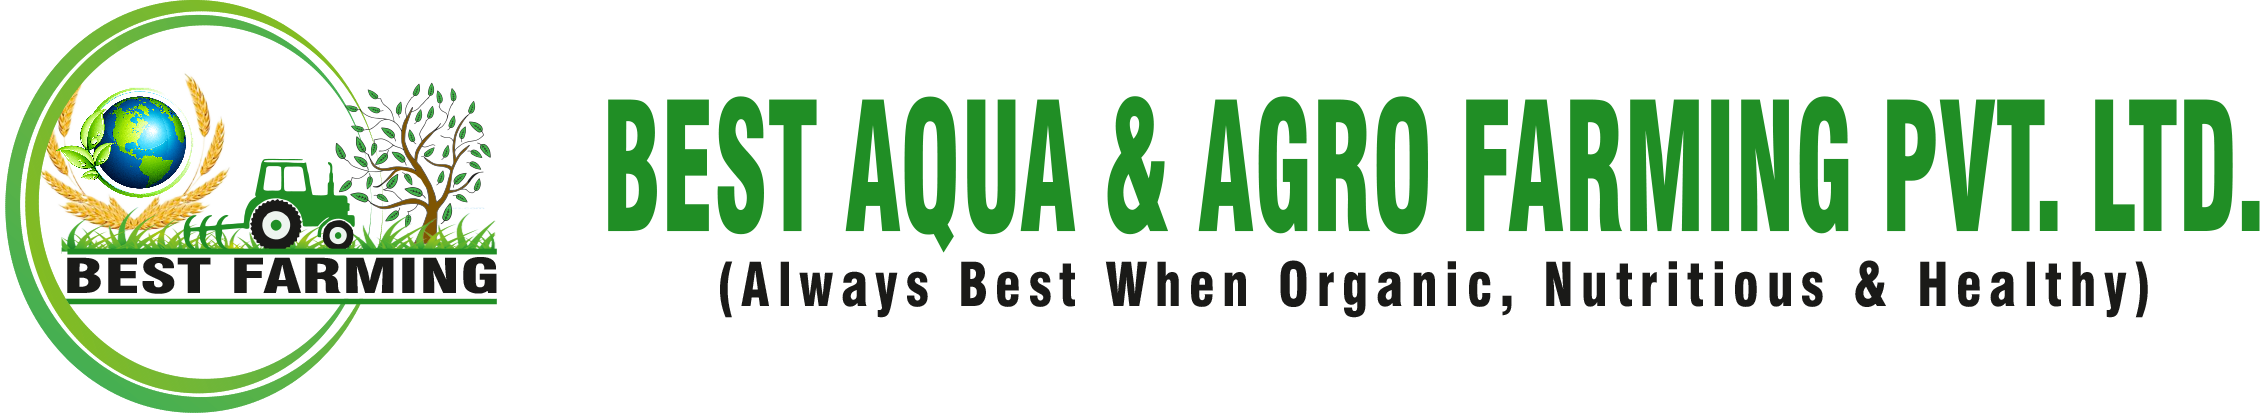 Best Aqua & Agro Farming Pvt. Ltd.